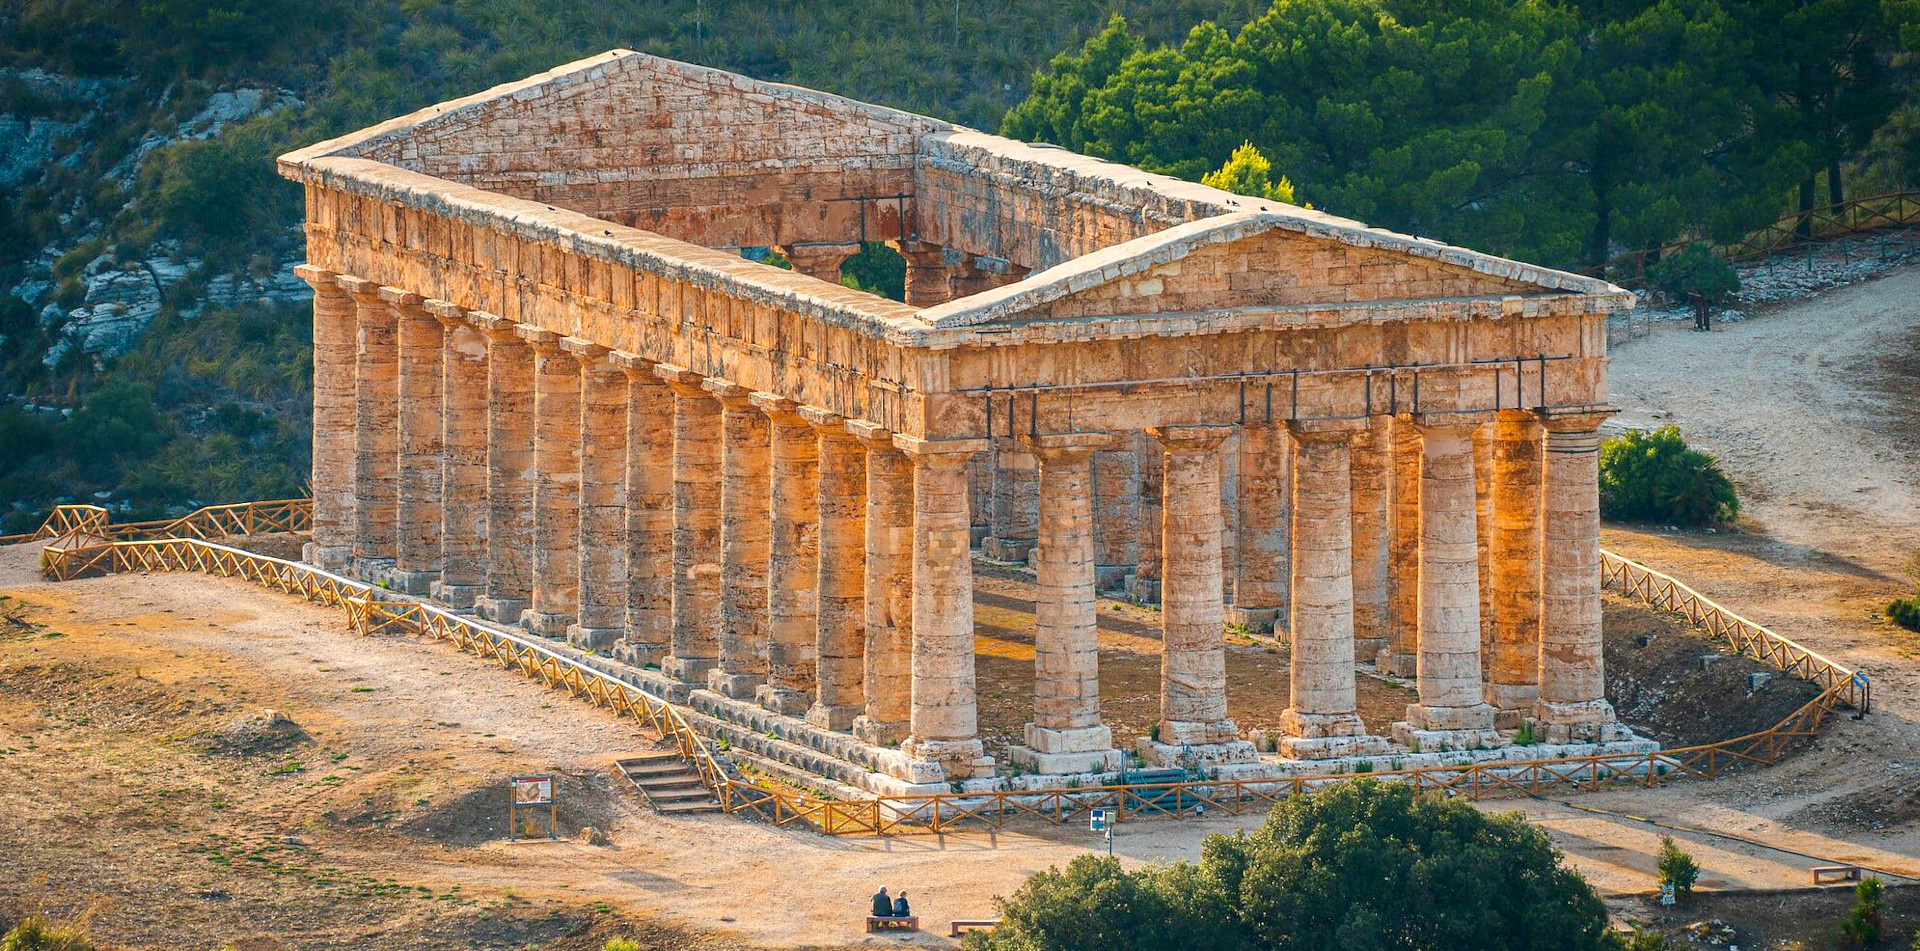 Il Tempio di Segesta, oltre 2000 anni di storia...